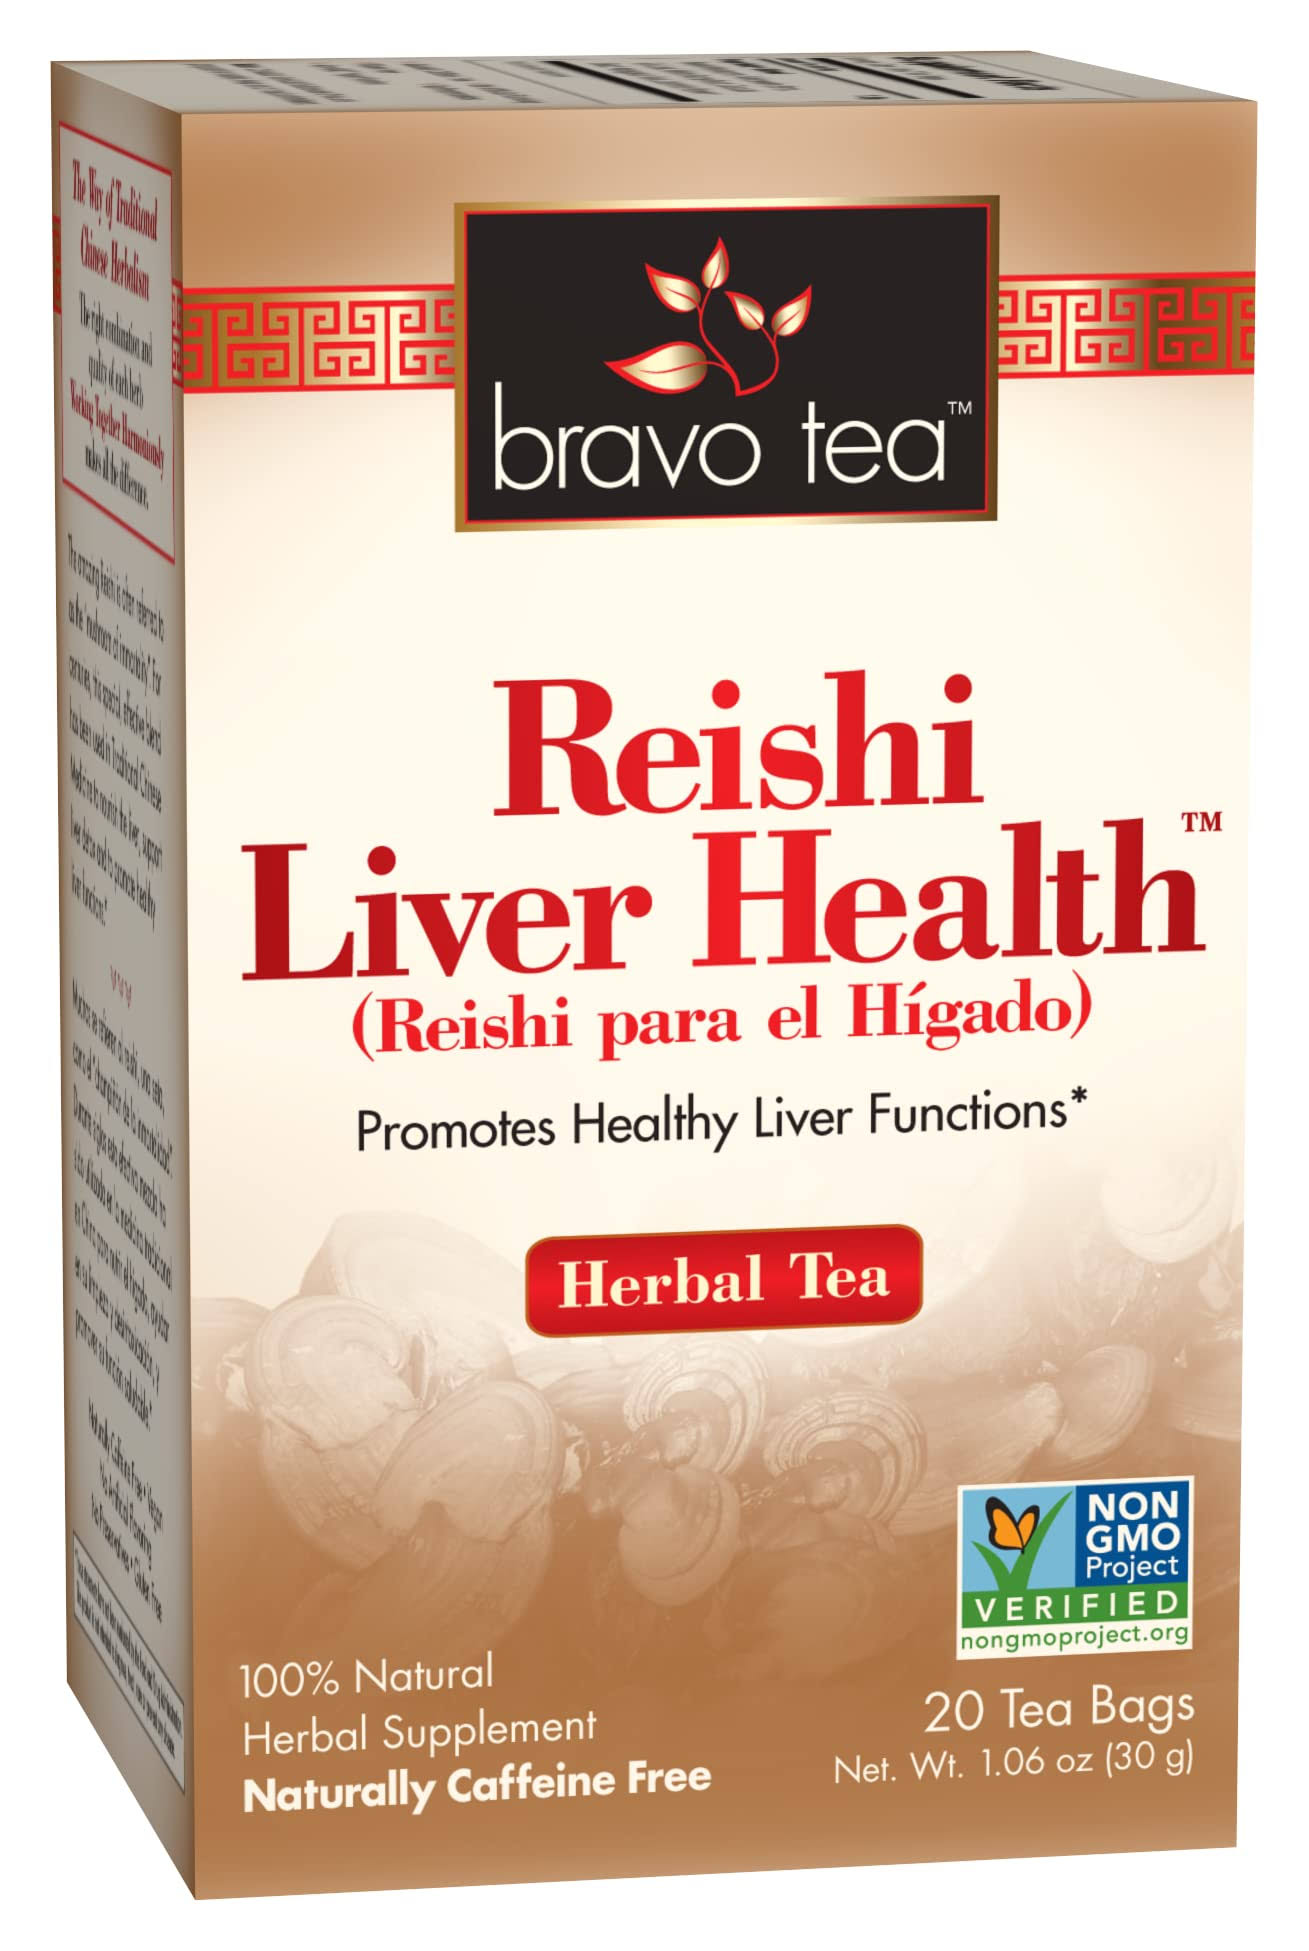 Bravo Tea Reishi Liver Health Herbal Tea - 20 Tea Bags, 30g